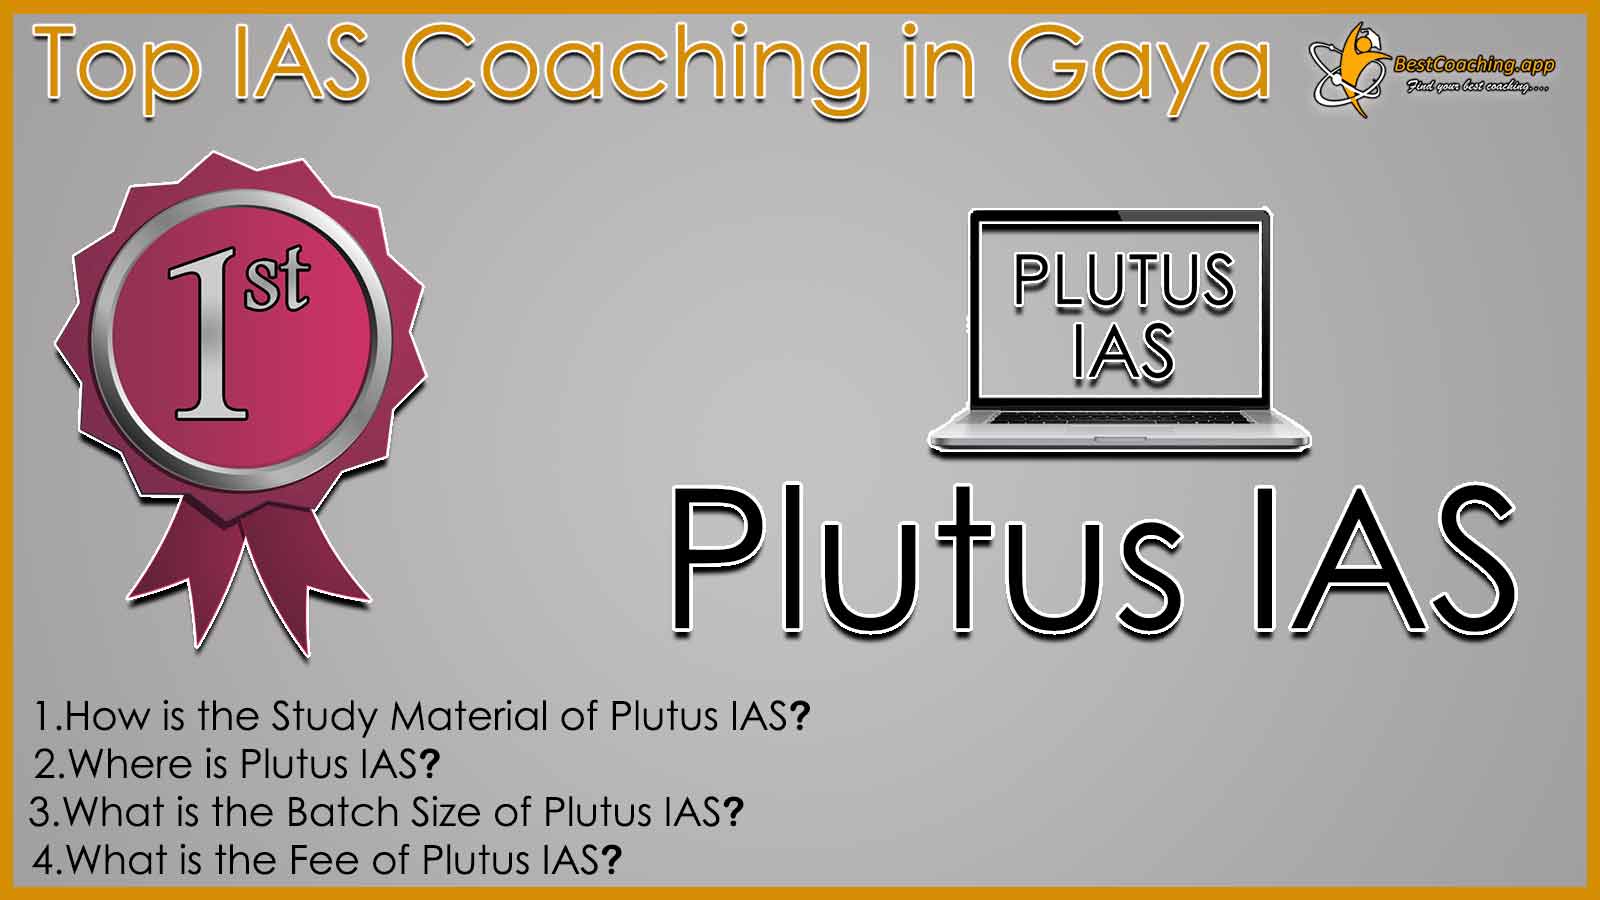 Top UPSC Coaching in Gaya